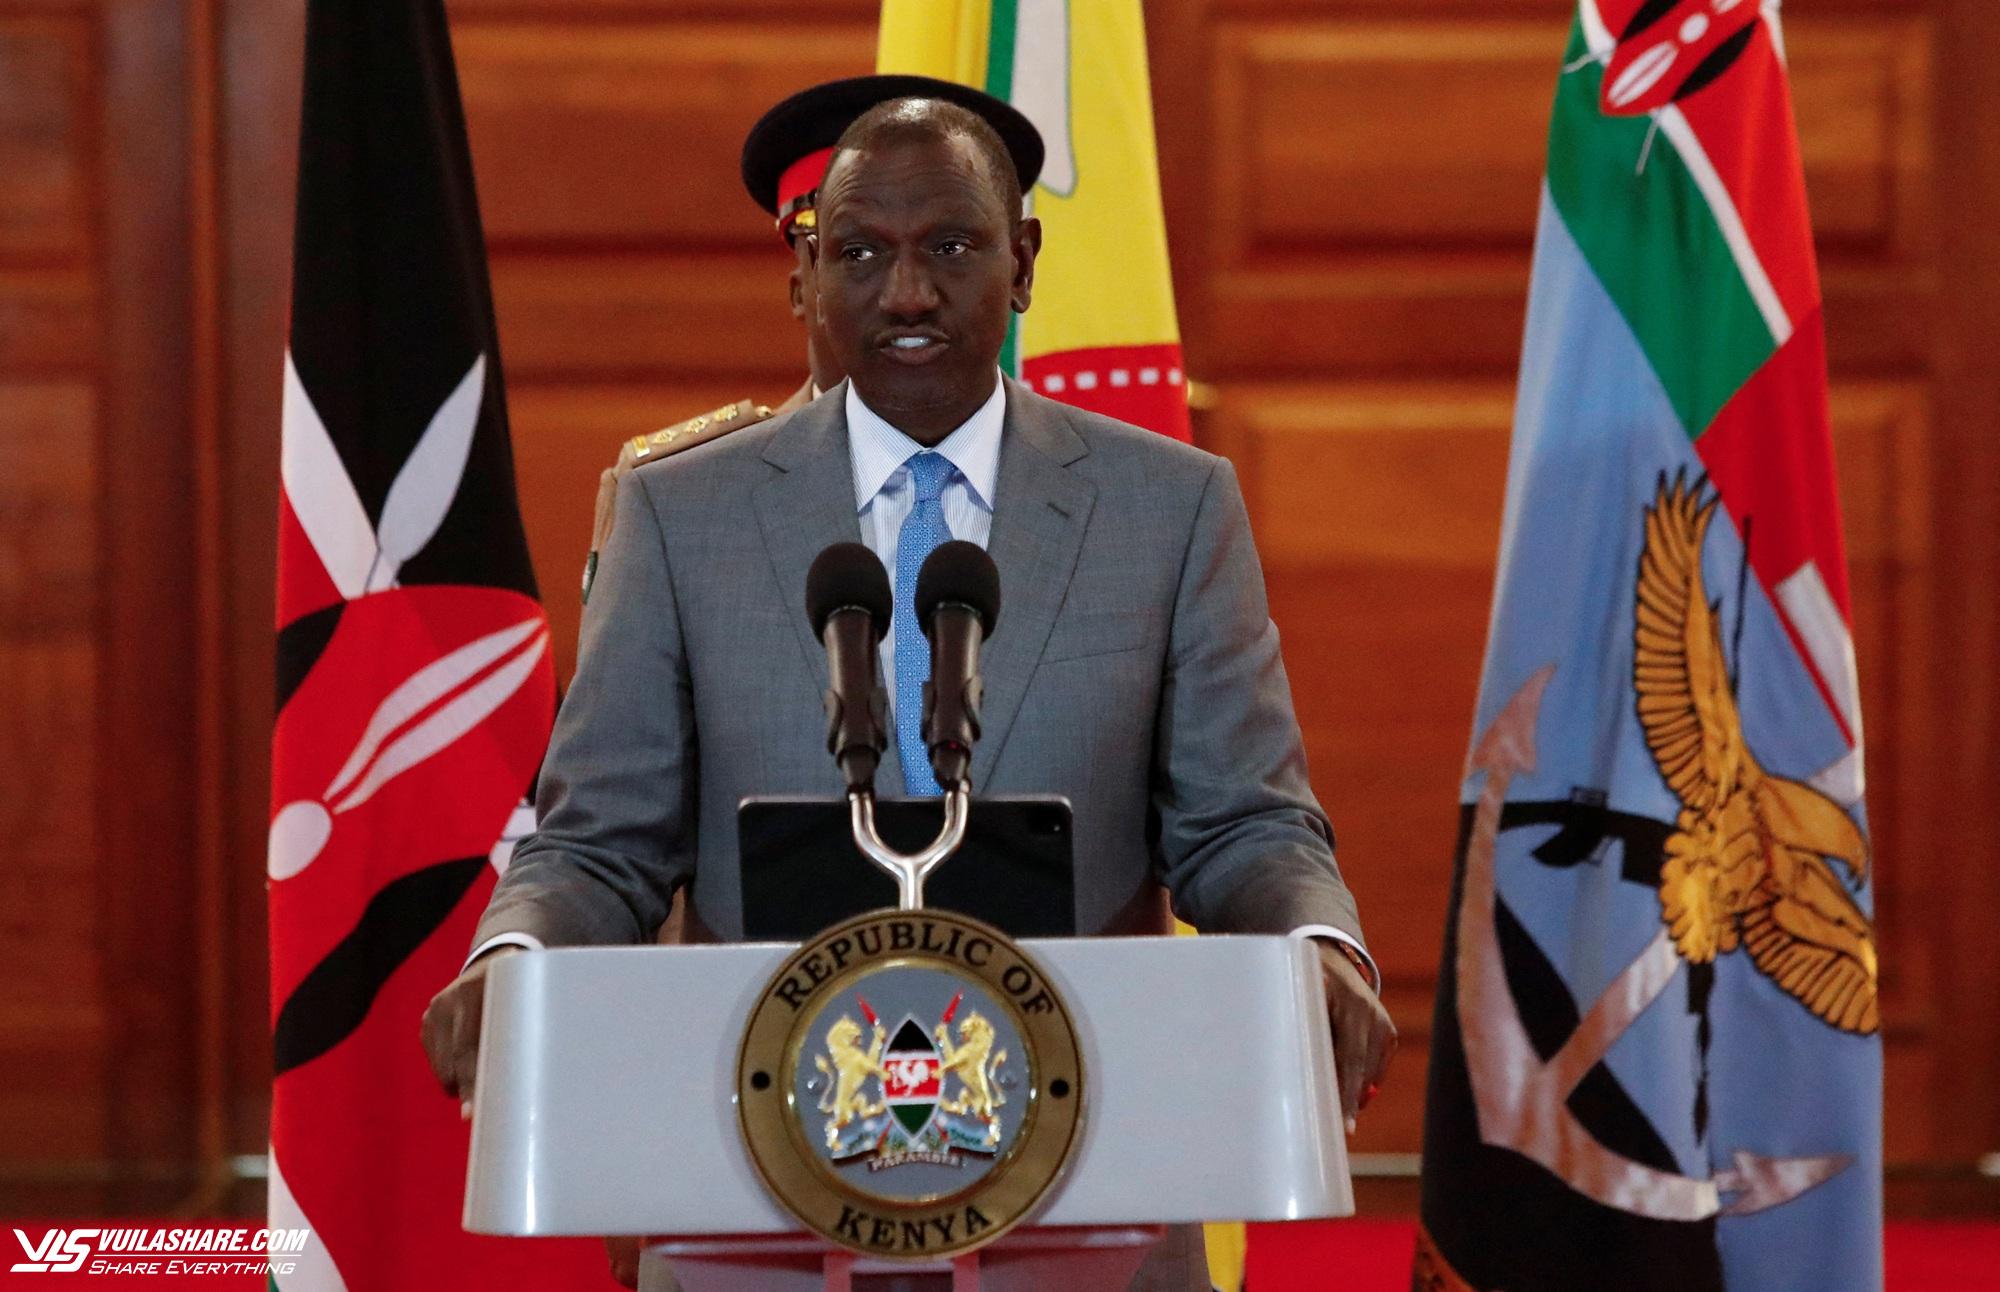 Tổng thống Kenya nhượng bộ người biểu tình, hứa không tăng thuế- Ảnh 1.